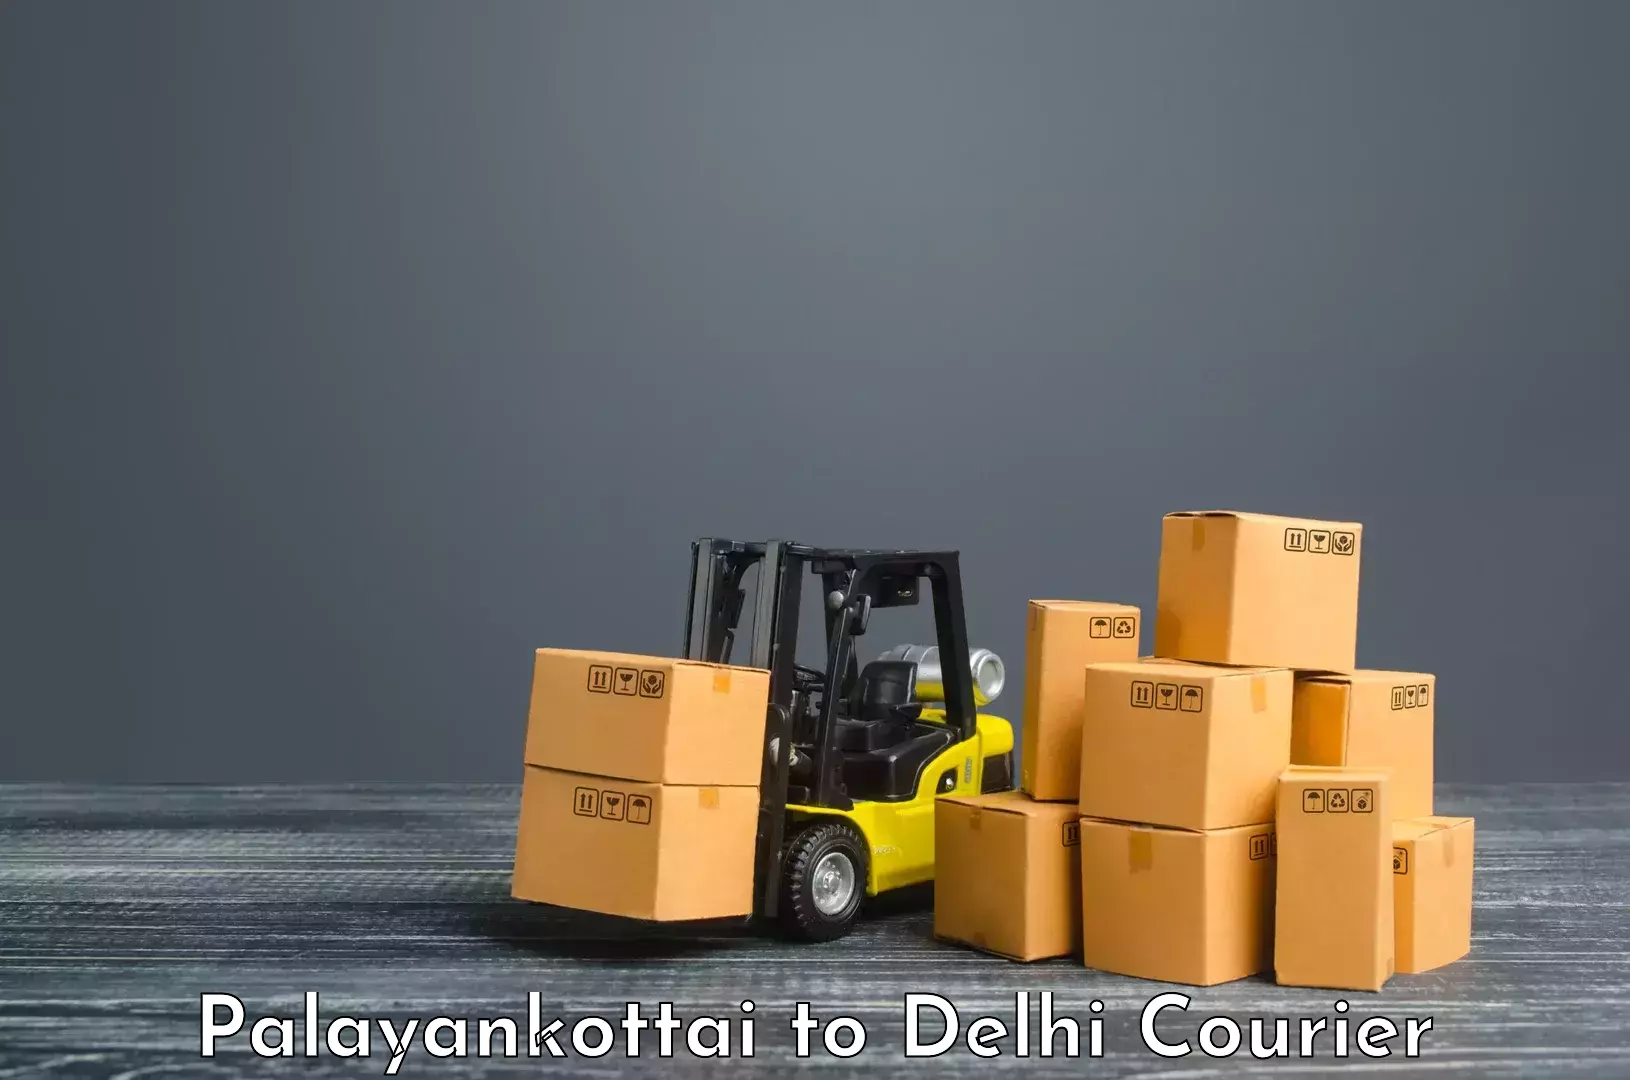 Express shipping Palayankottai to NIT Delhi